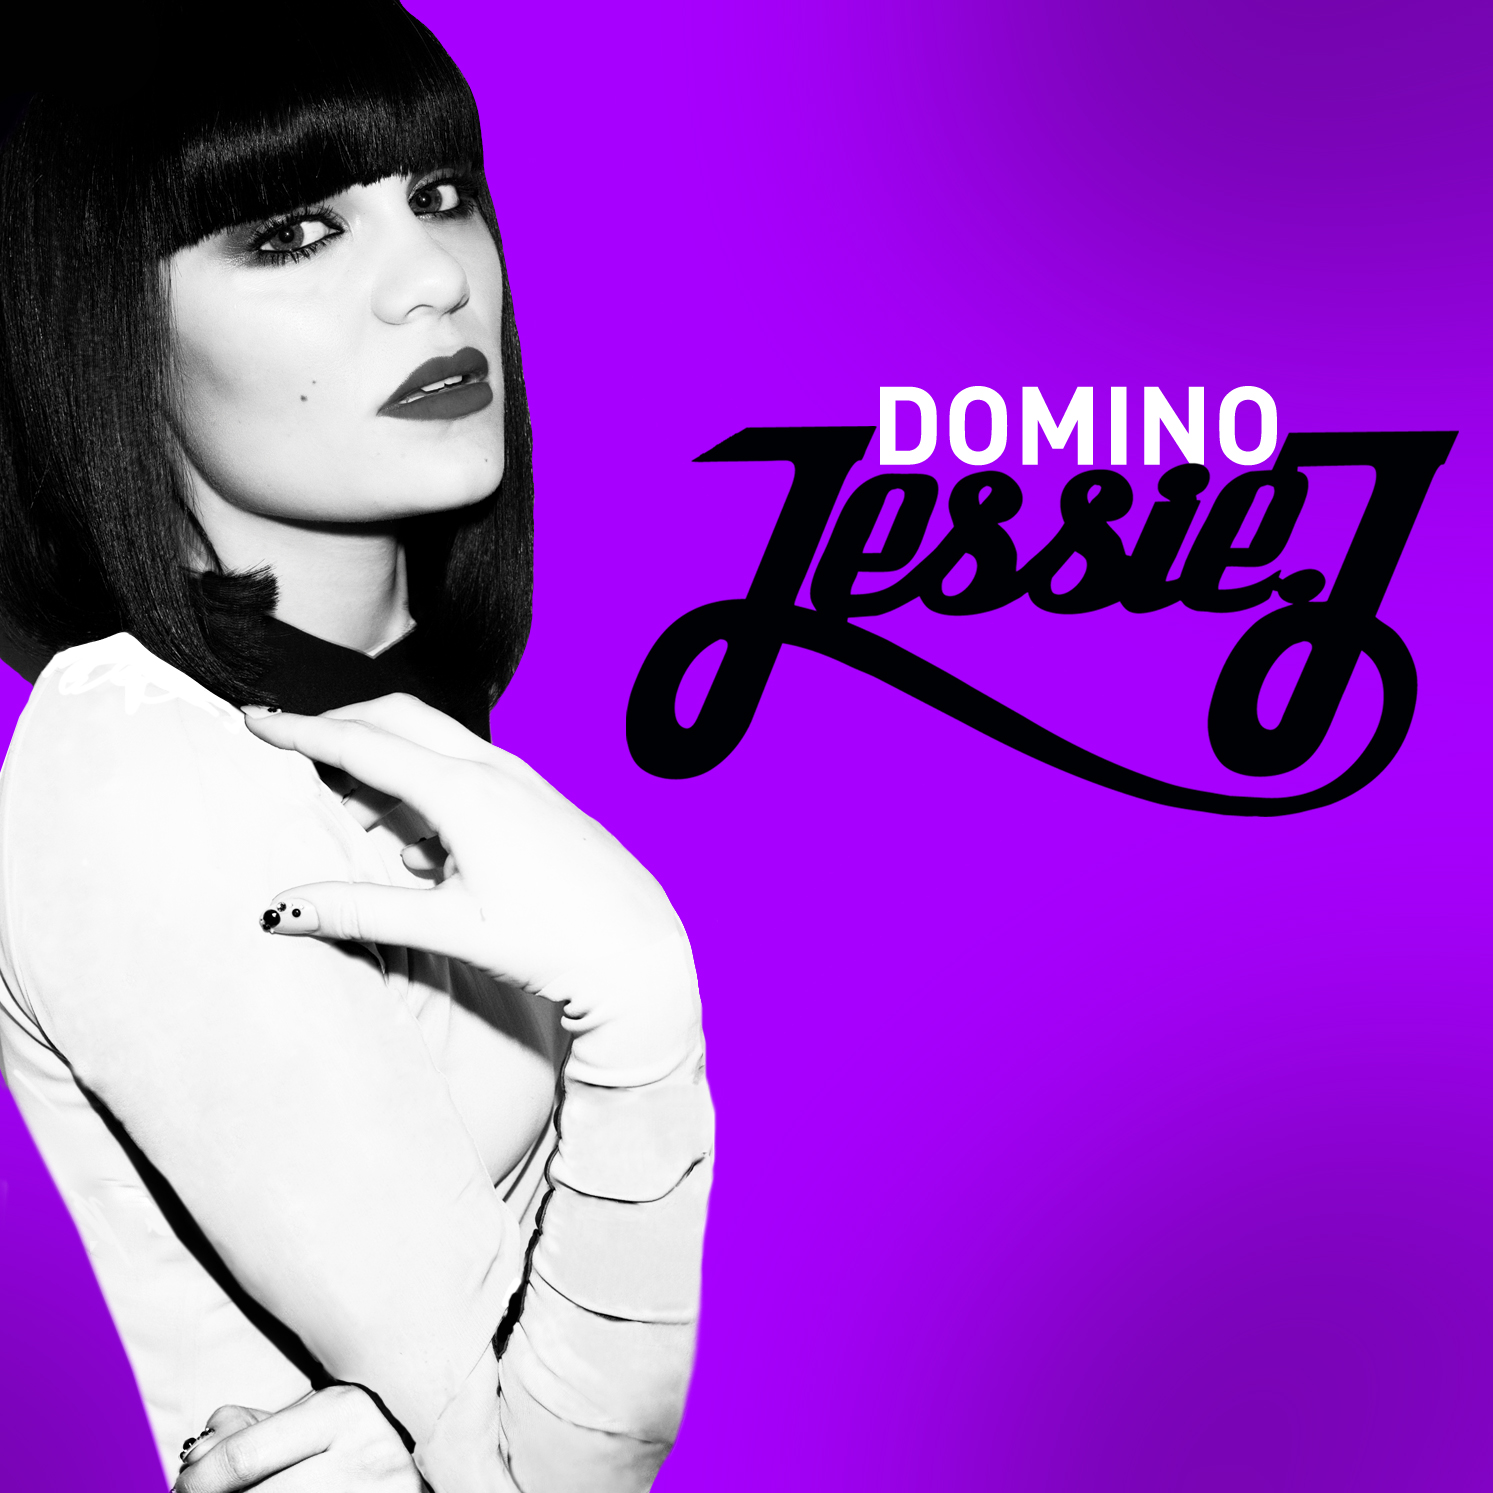 http://3.bp.blogspot.com/-i6Mw9hxnOoE/T8G52030GPI/AAAAAAAAGiY/_yQfl8dKOTk/s1600/Jessie+J+Domino.jpg